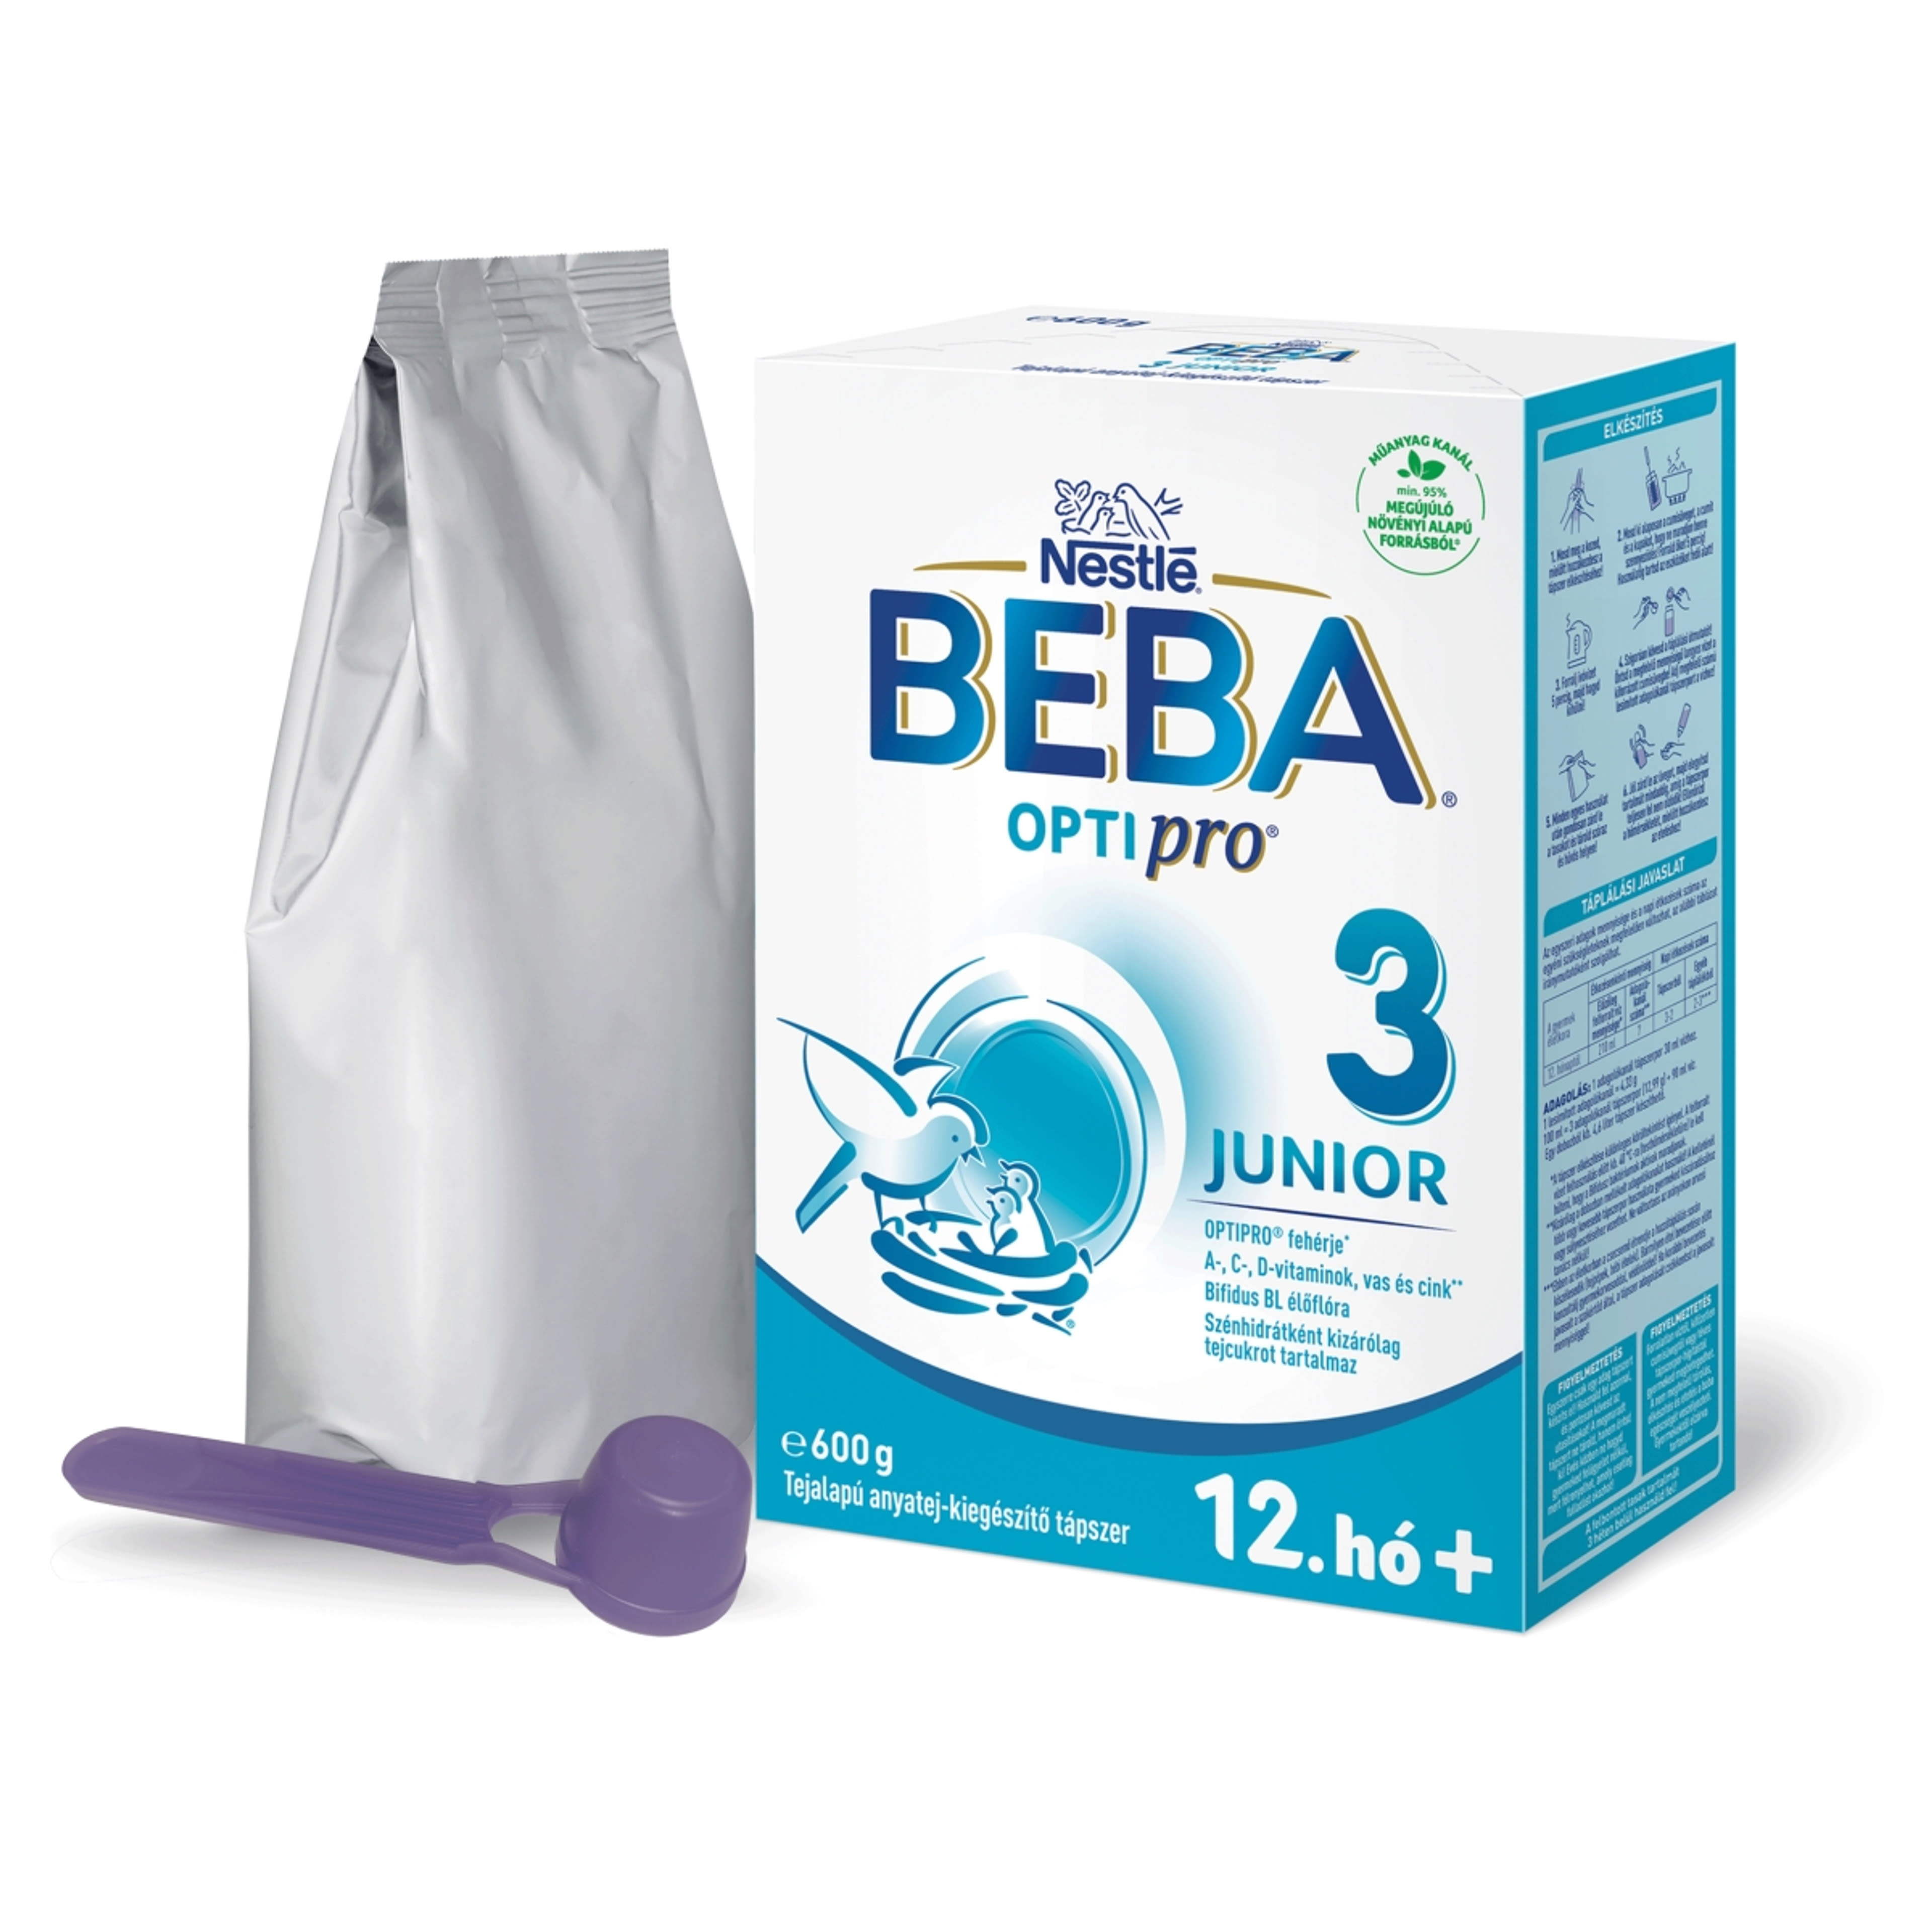 Beba Optipro 3 Junior tejalapú anyatej-kiegészítő tápszer 12. hónapos kortól - 600 g-2